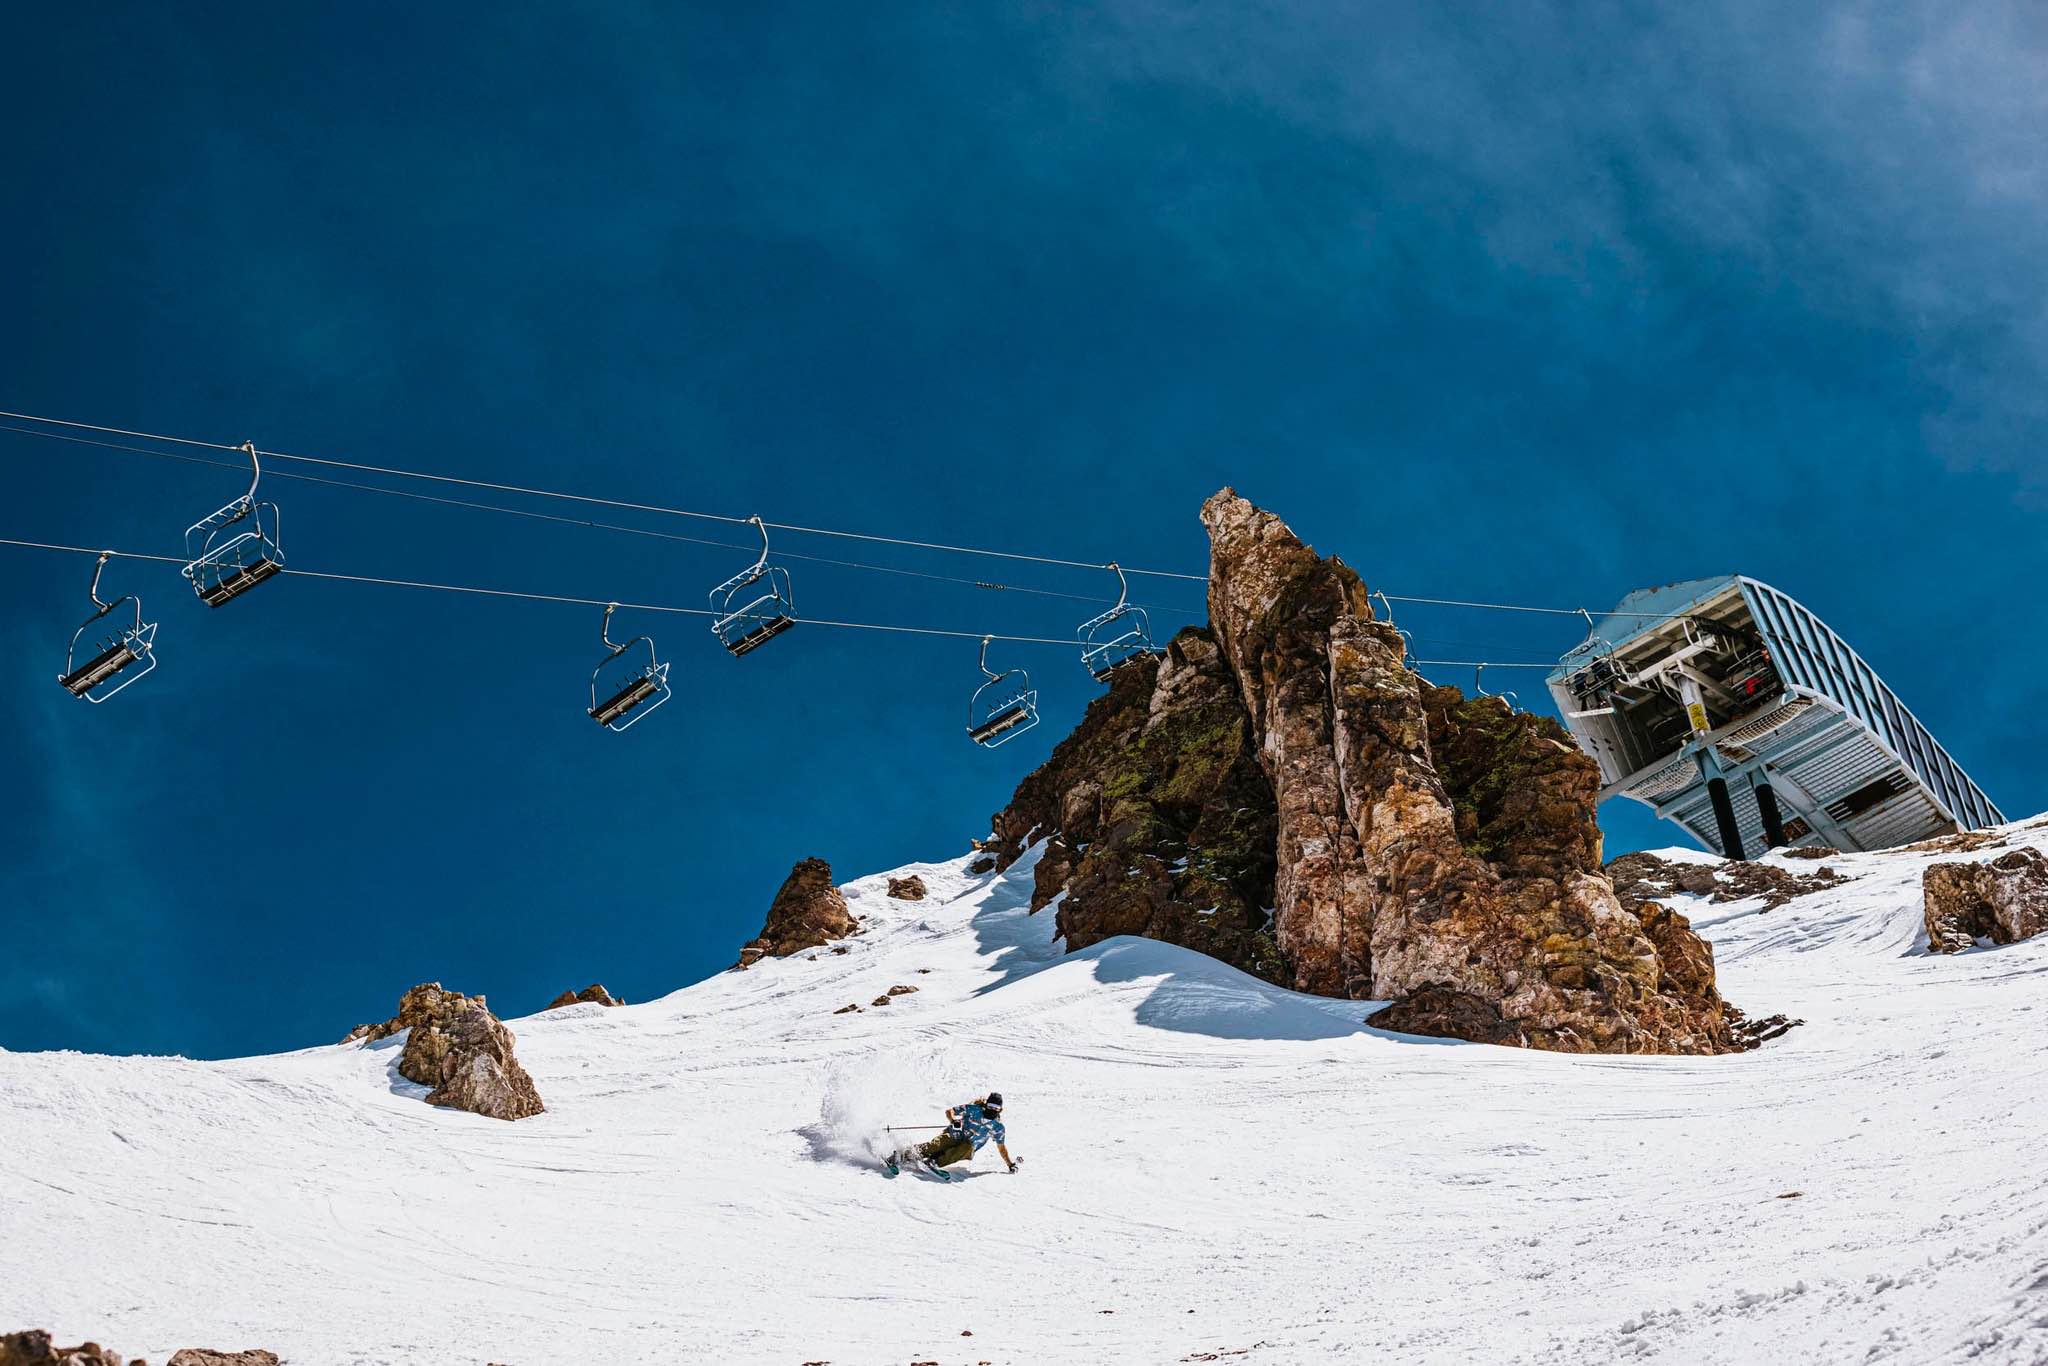 Podría Mammoth encadenar dos temporadas de esquí seguidas por primera vez en su historia?